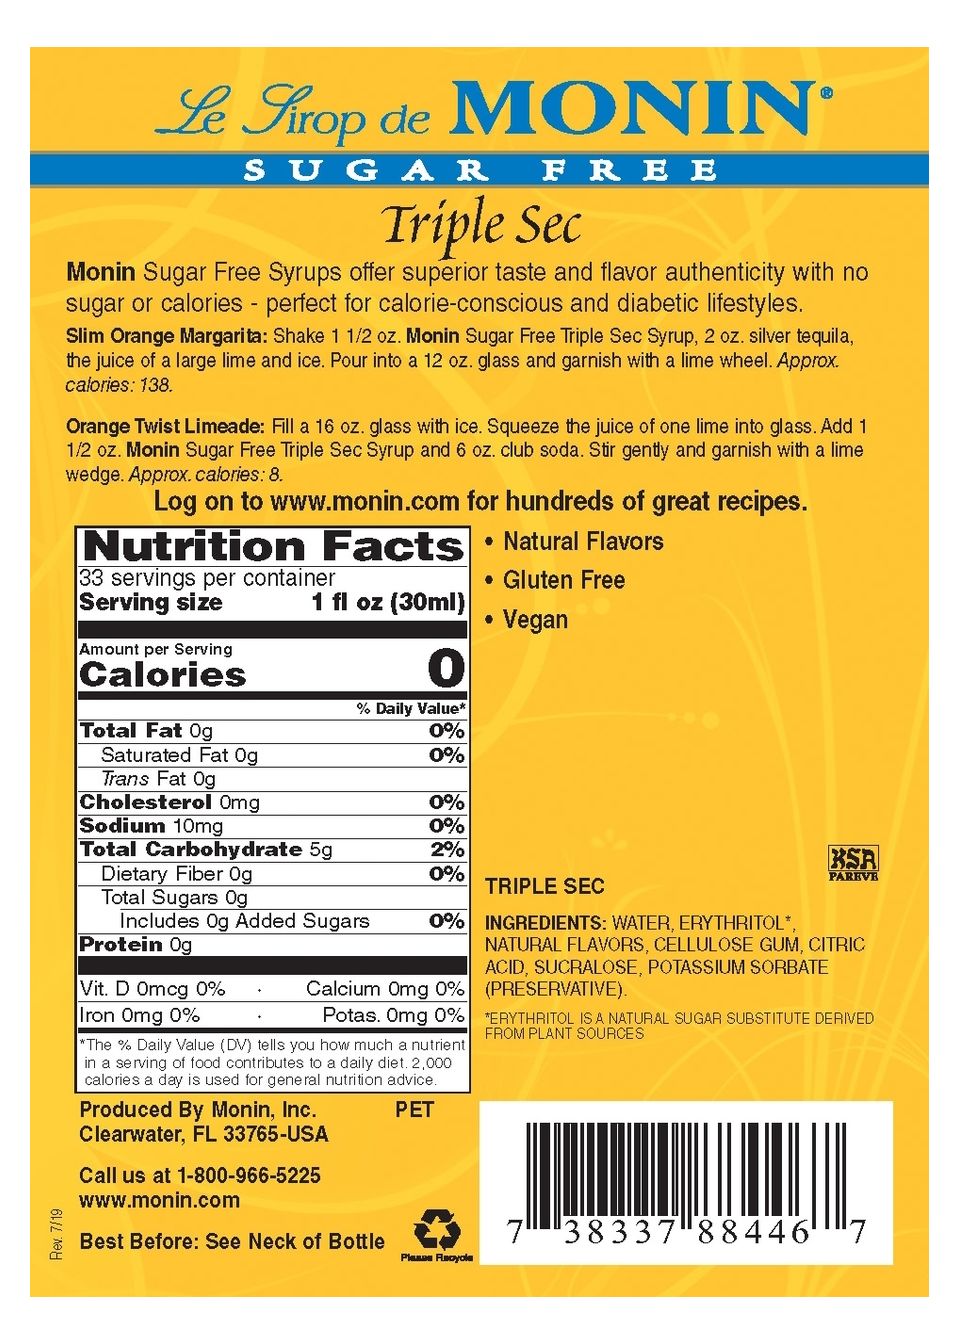 #Flavor_Triple Sec (plastic) #Size_1 liter